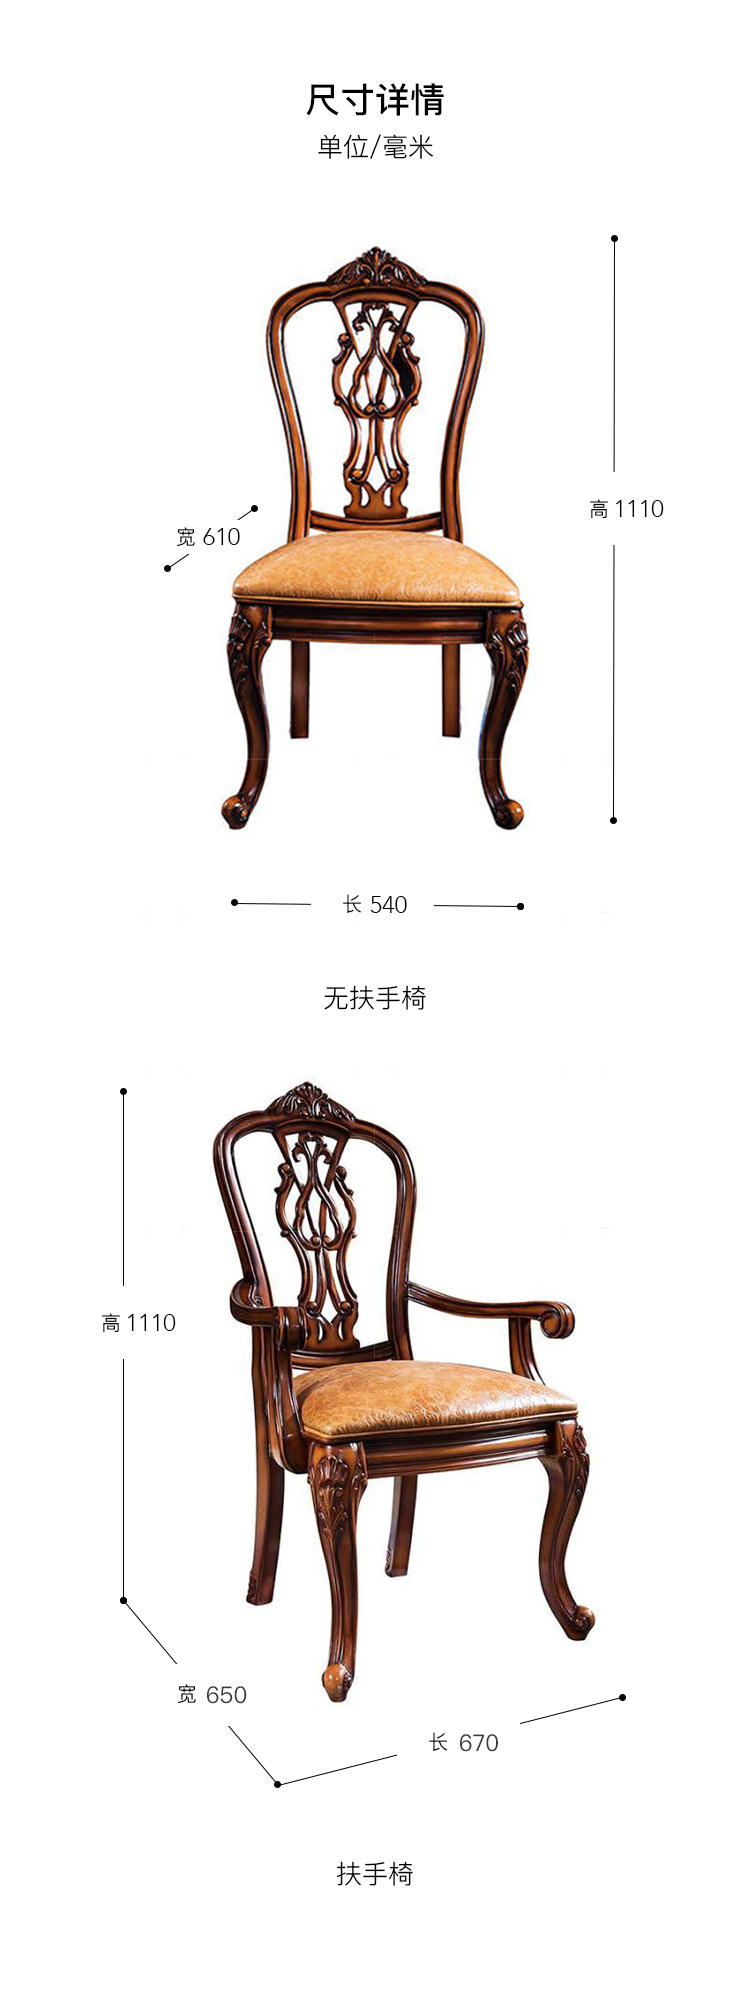 古典欧式风格马克斯餐椅的家具详细介绍